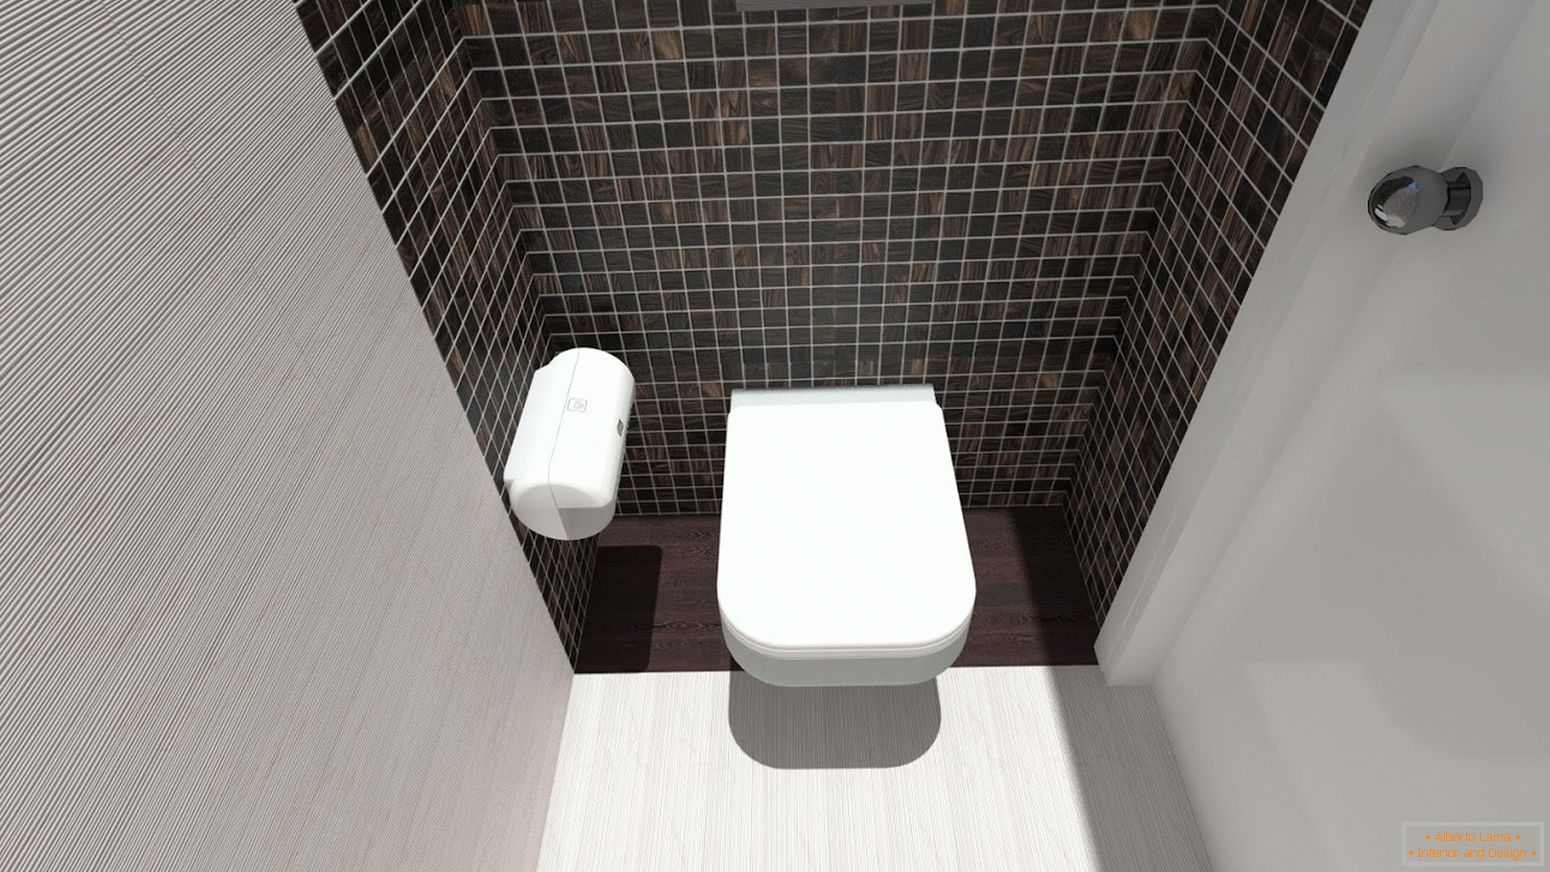 мозаїчна плитка в дизайне туалета